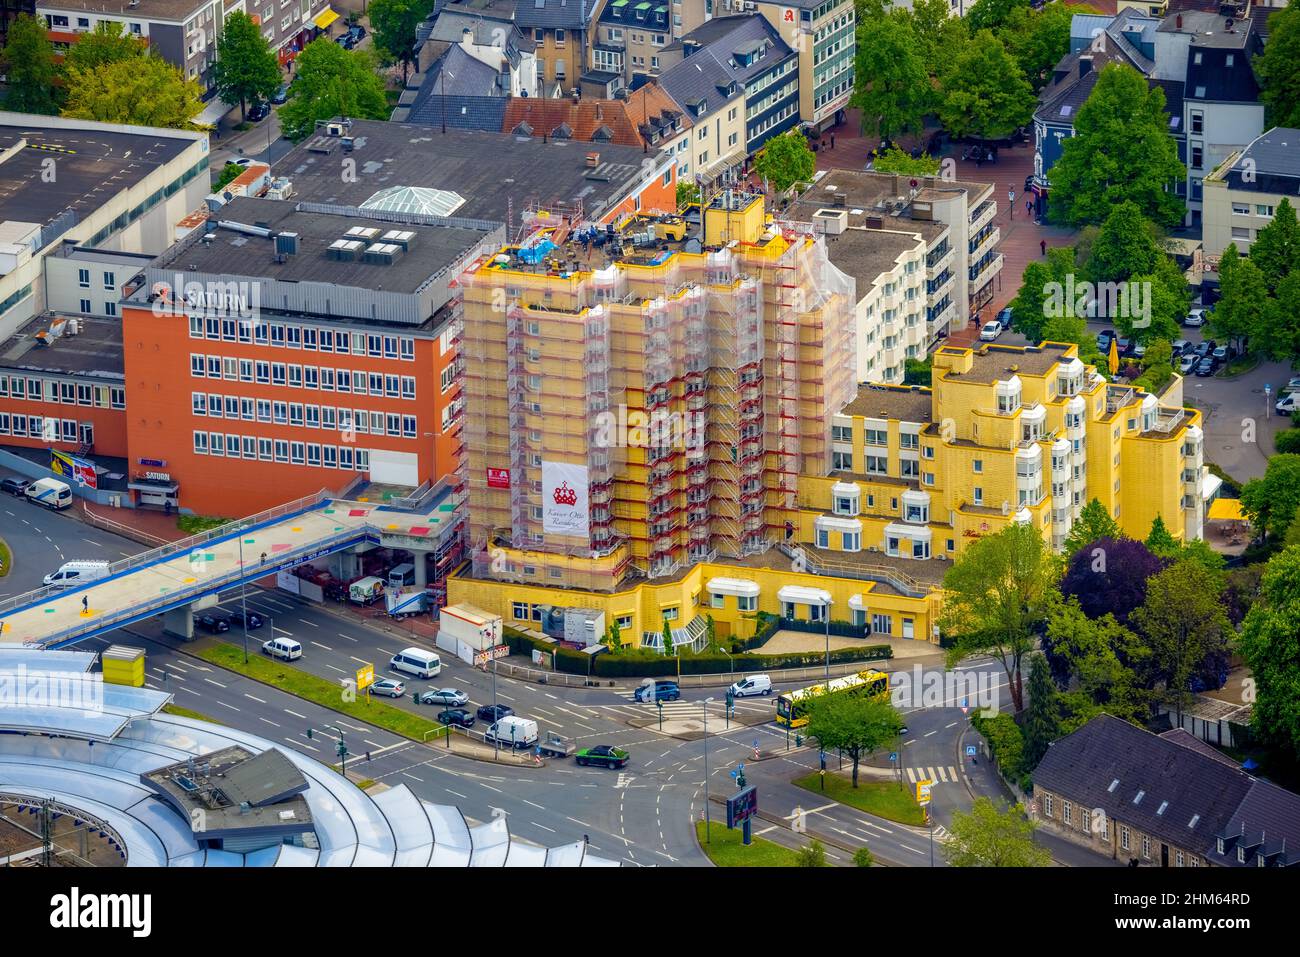 Vista aerea, cantiere Kaiser-otto-Residenz Essen, Essen-Steele, Essen, zona della Ruhr, Renania settentrionale-Vestfalia, Germania, casa di riposo, pensionamento Foto Stock